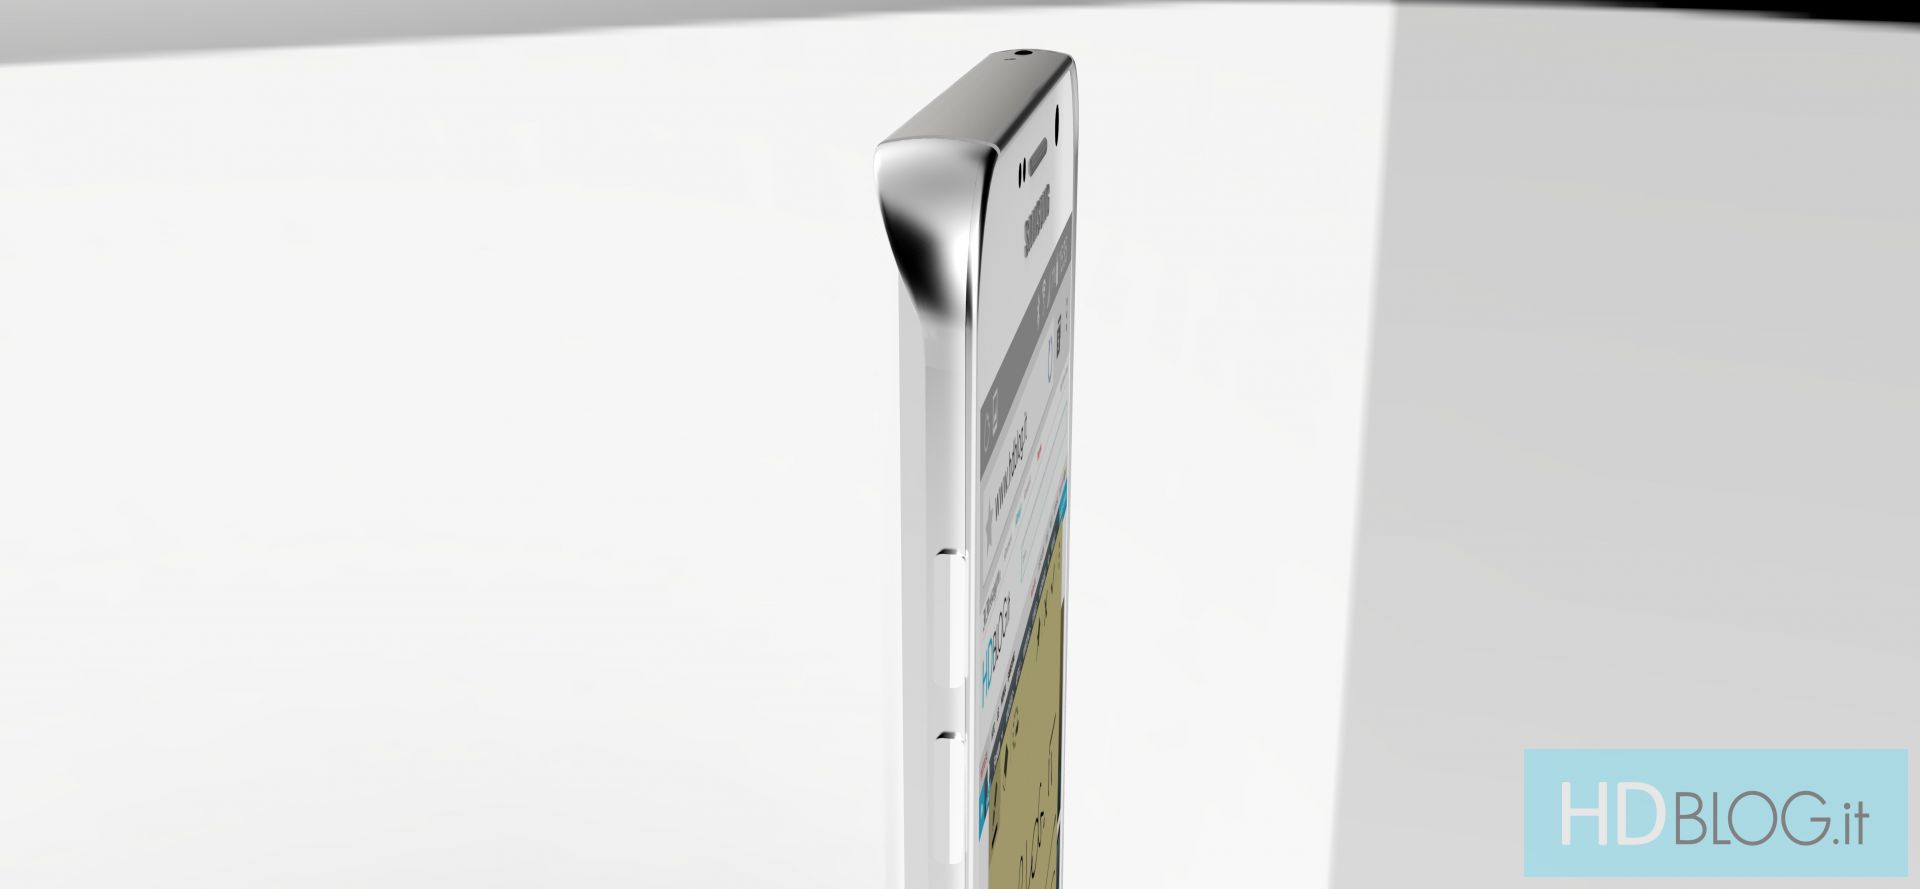 Samsung เตรียมเปิดตัว Note 5 กลางสิงหาคมที่จะถึงนี้ เพื่อชิงความได้เปรียบจากค่ายผลไม้